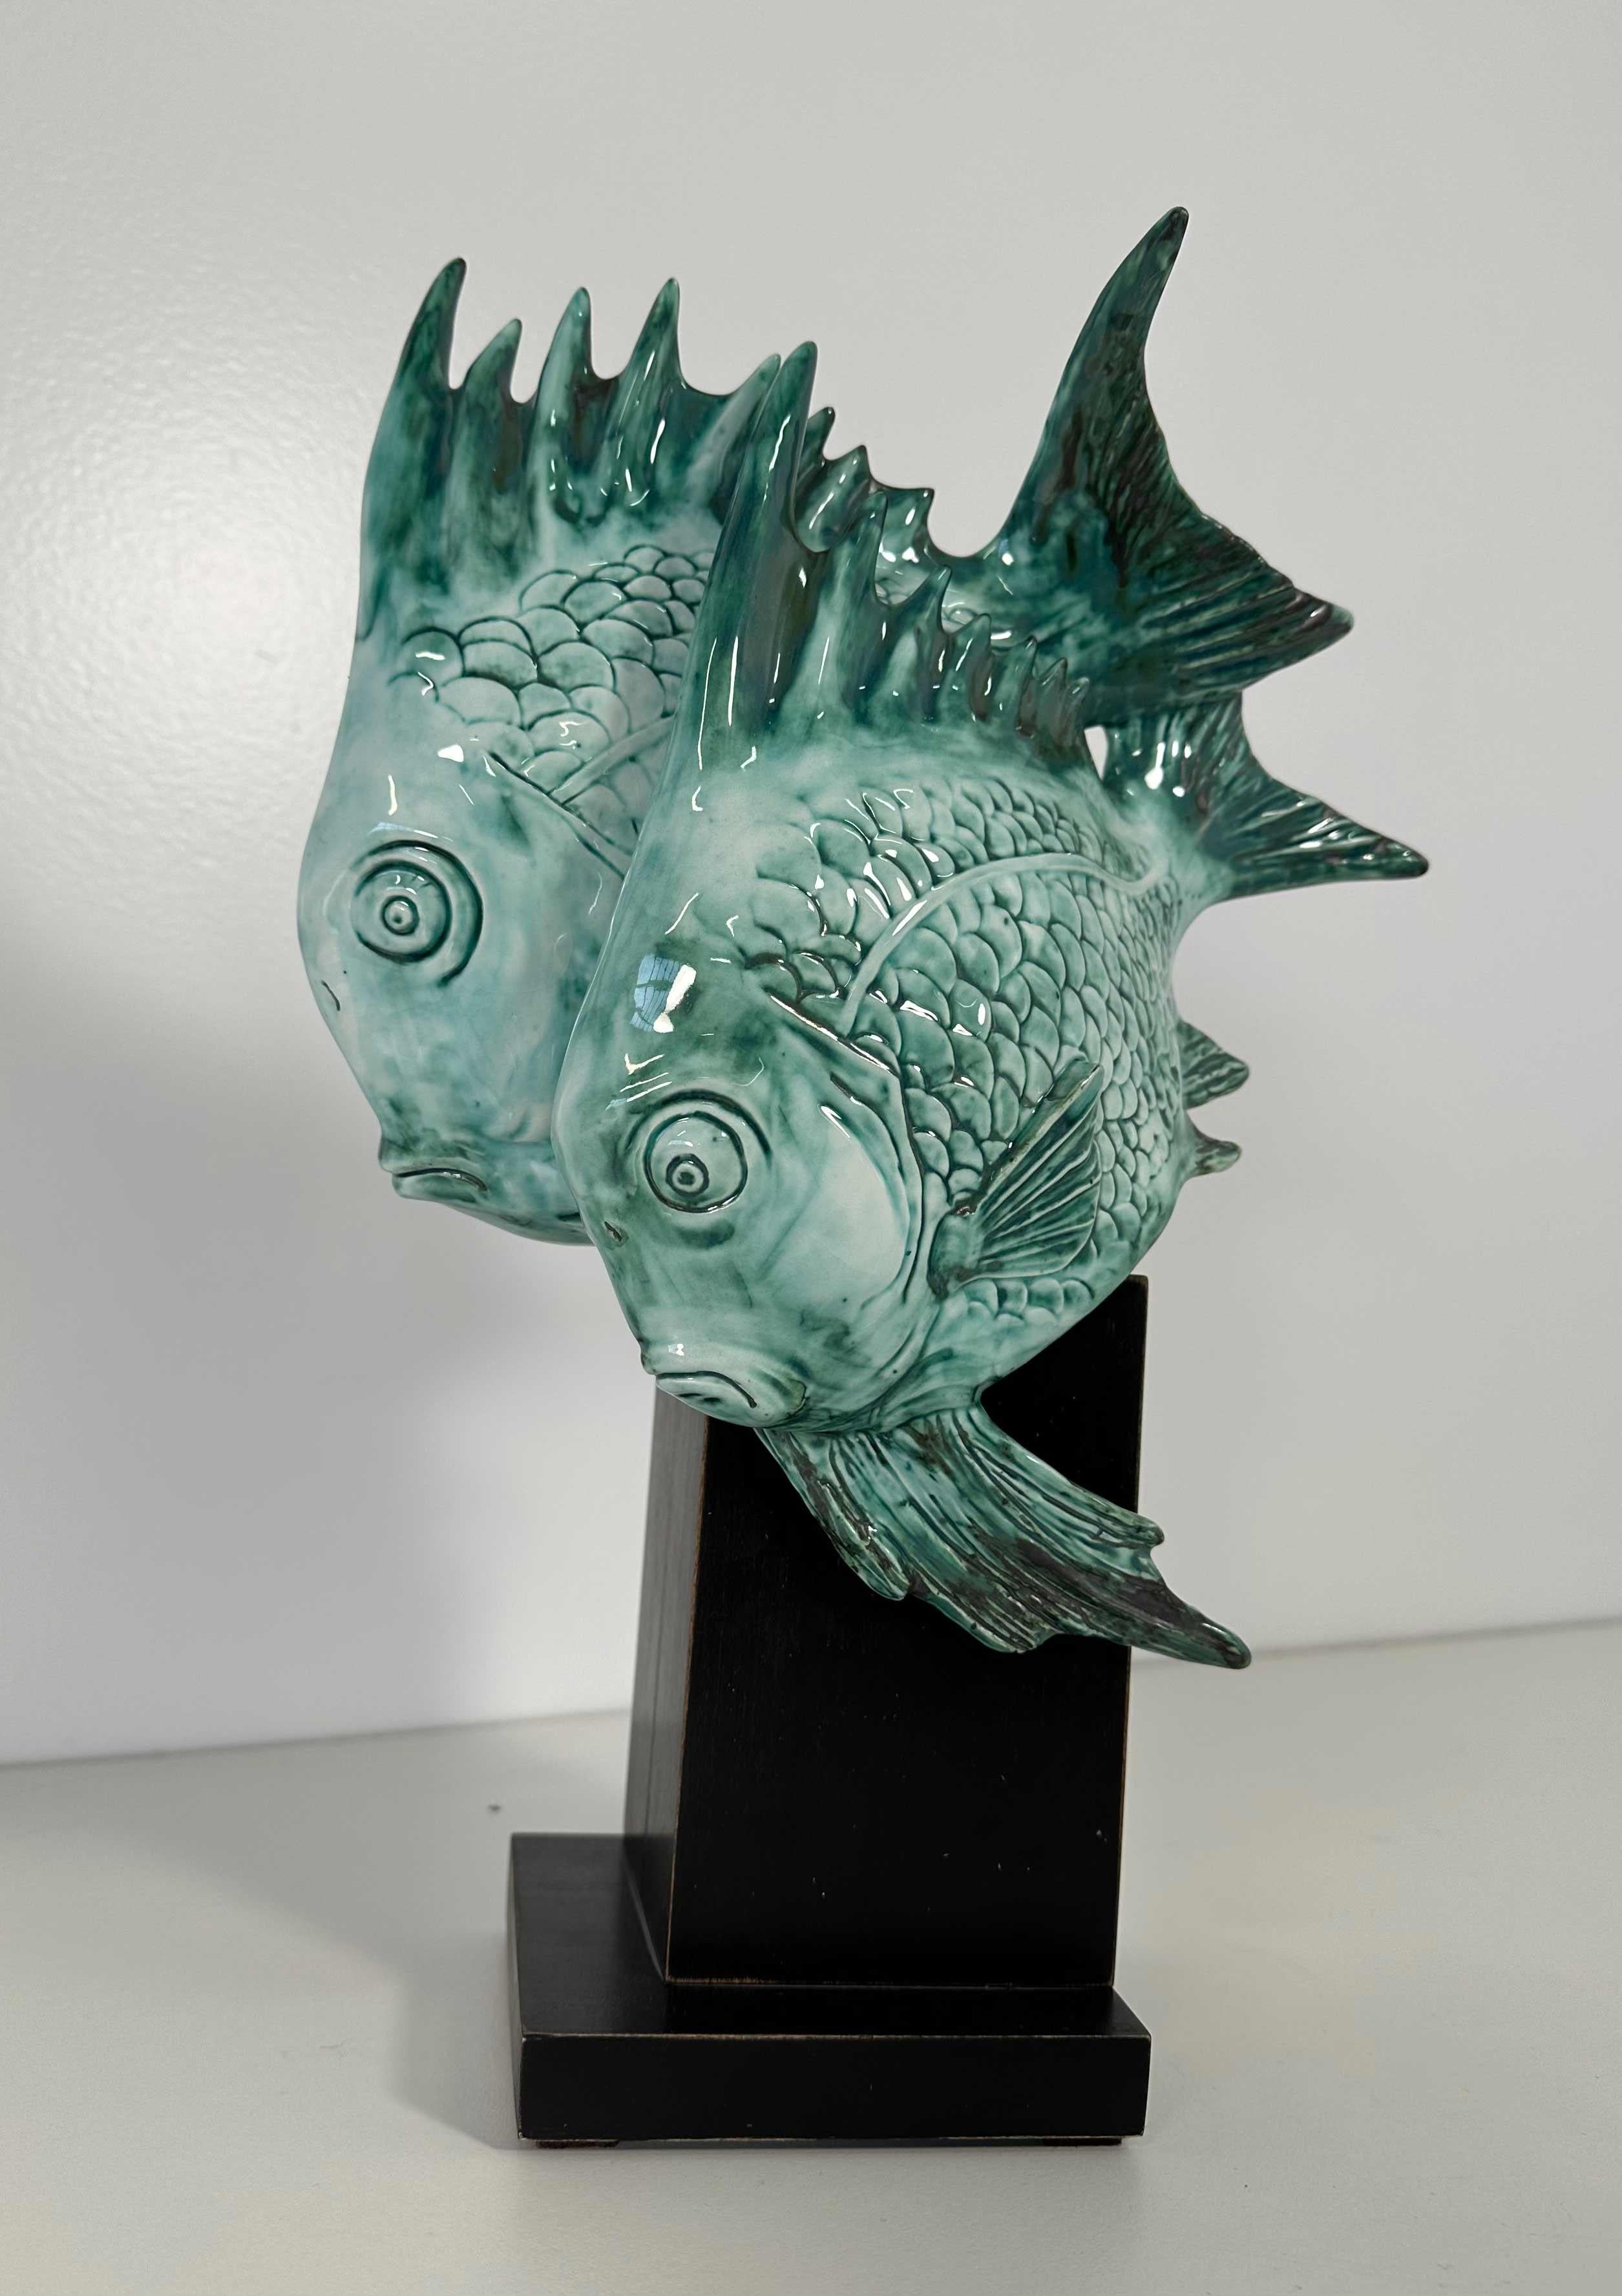 Cette sculpture Art déco a été produite en Italie, et plus précisément à Milan, par Guido Cacciapuoti dans les années 1930. 

La base est en bois ébonisé et la sculpture, un couple de poissons, est en grès cérame bleu clair.

Sous la base se